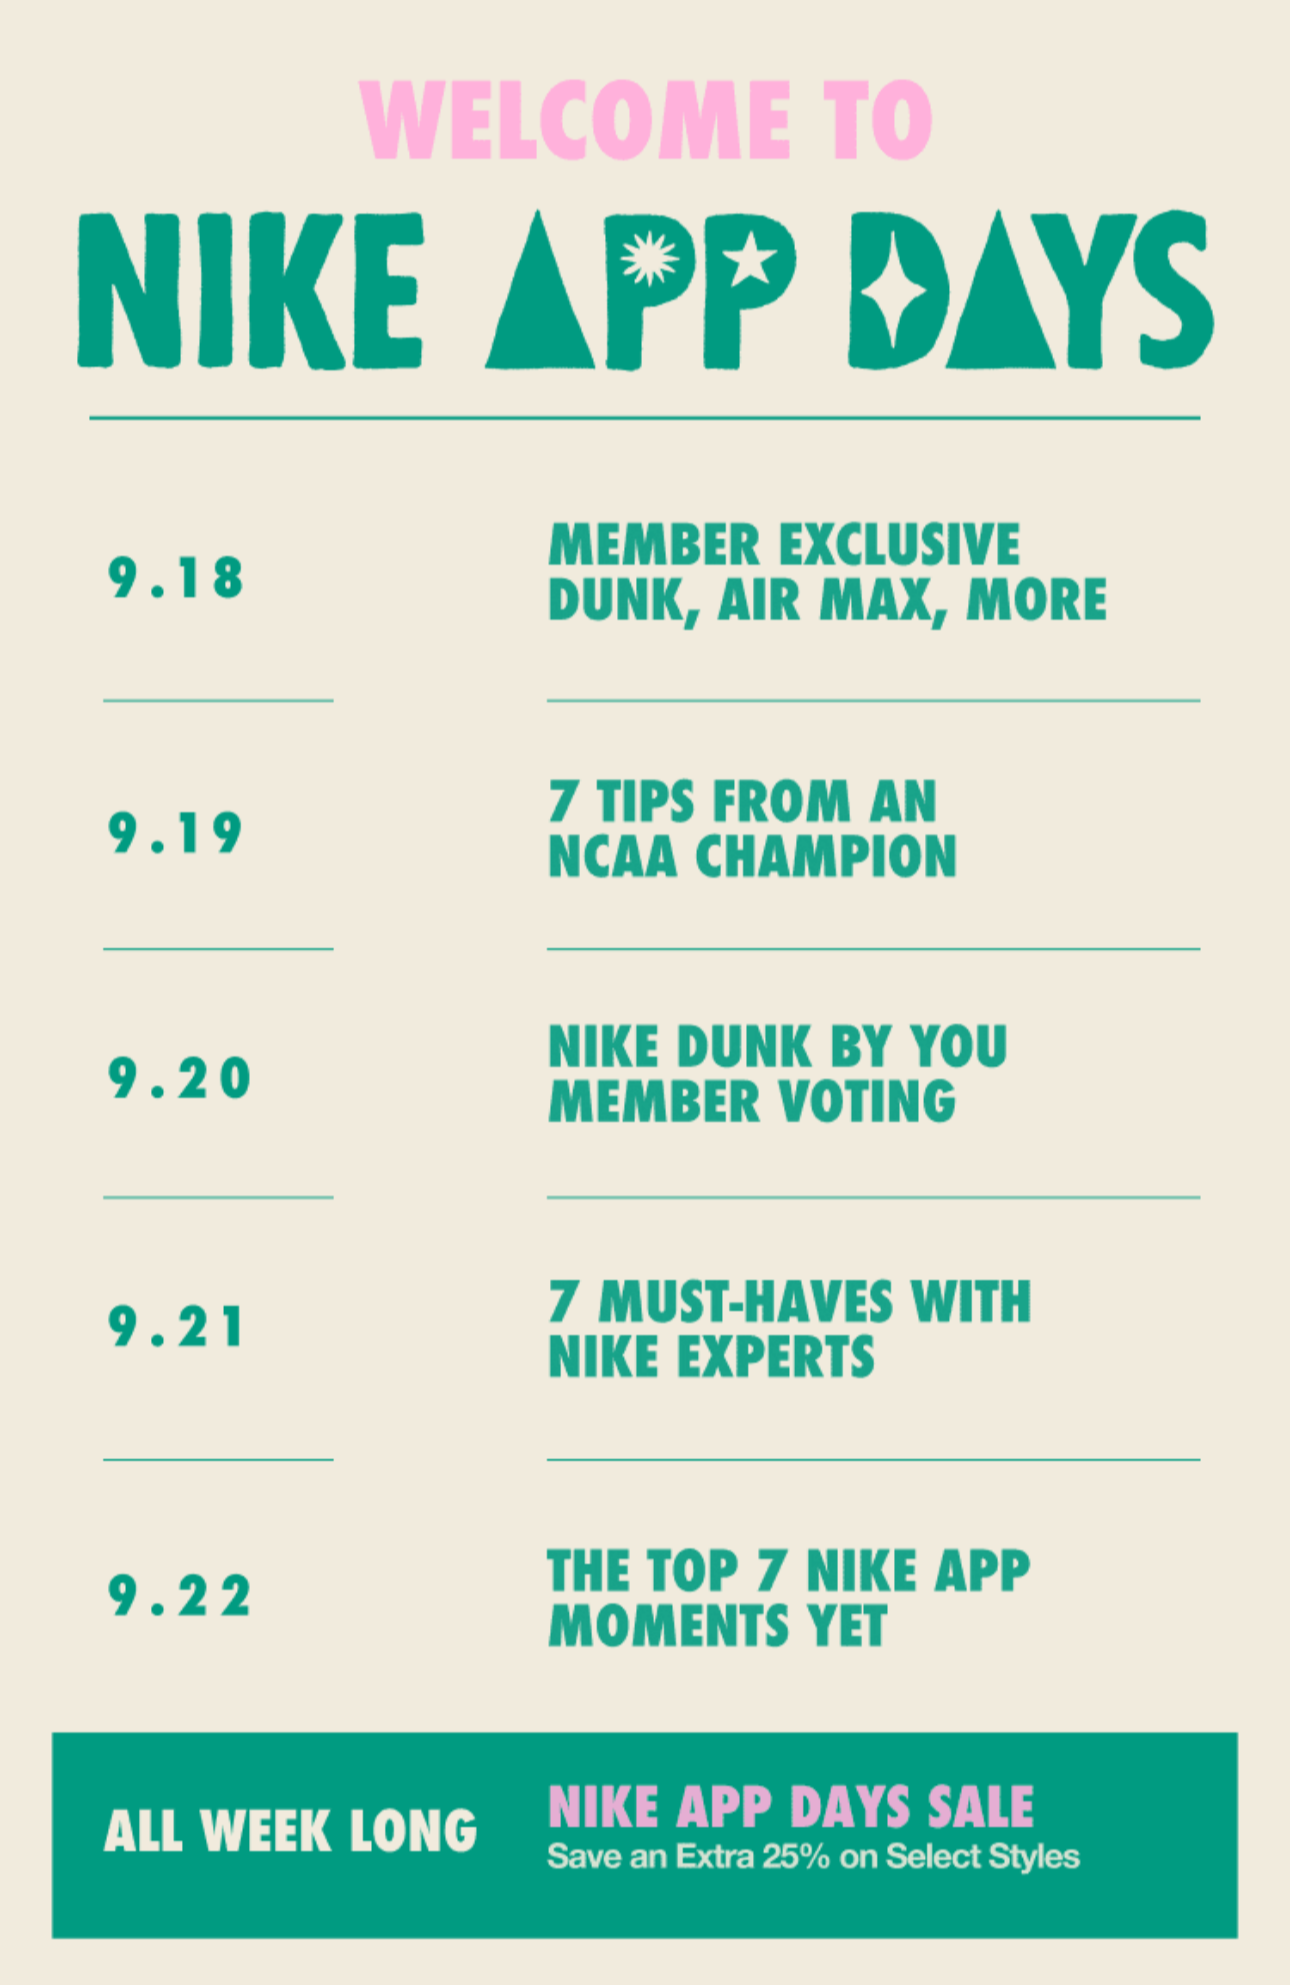 Nike App Days Schedule